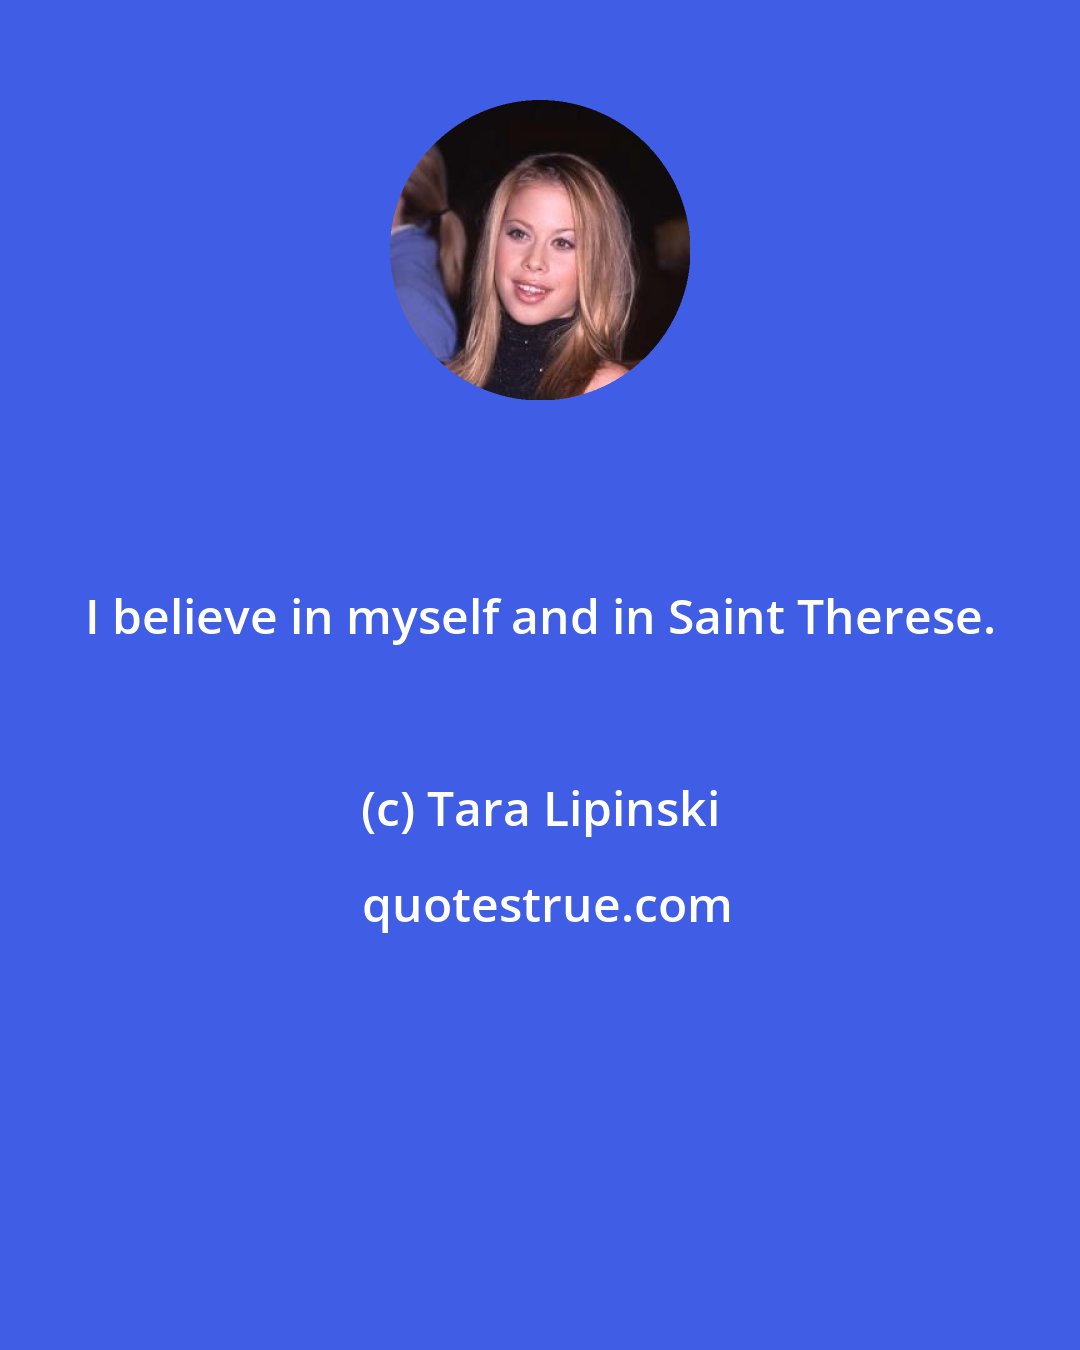 Tara Lipinski: I believe in myself and in Saint Therese.